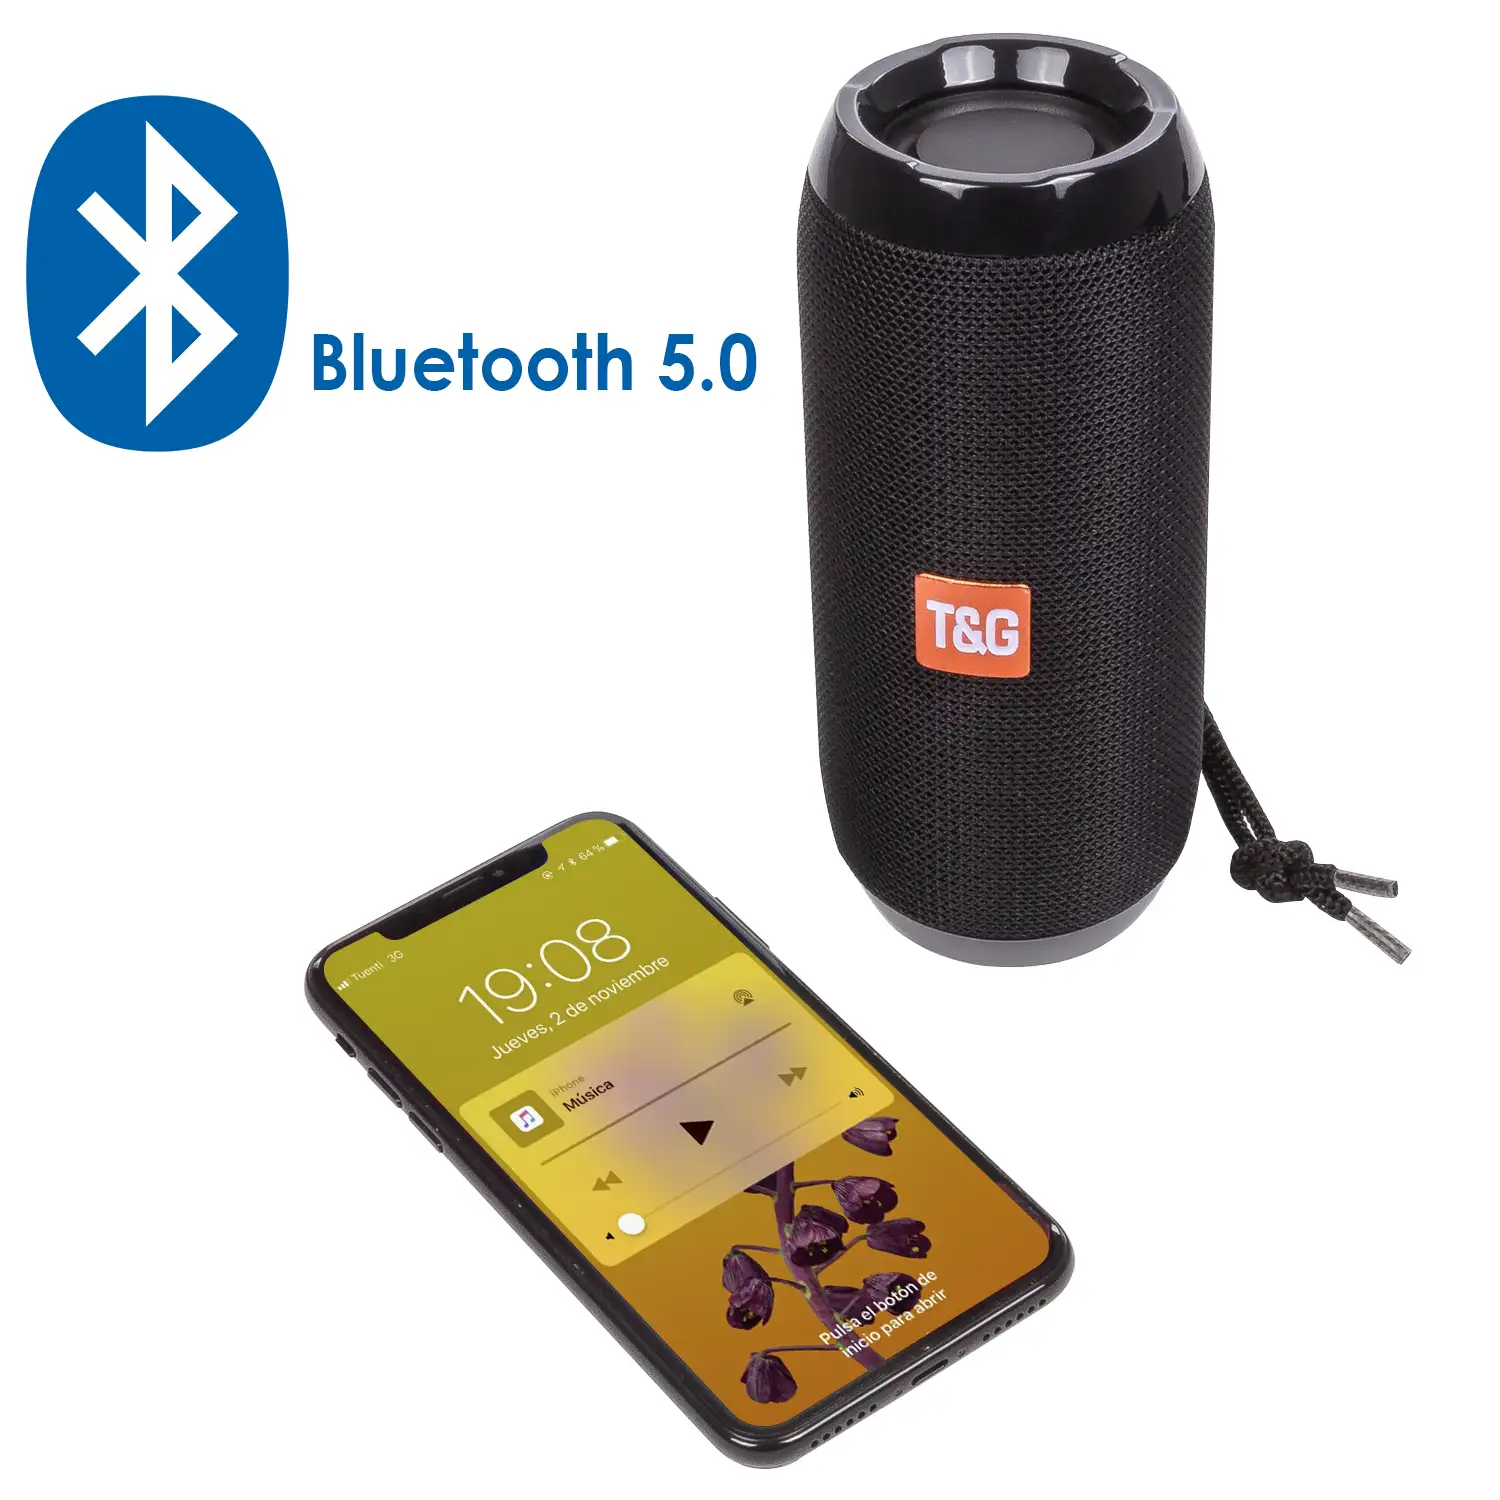 Altavoz A117 Bluetooth portátil. Lector USB, micro SD, radio FM y manos  libres. Entrada auxiliar jack